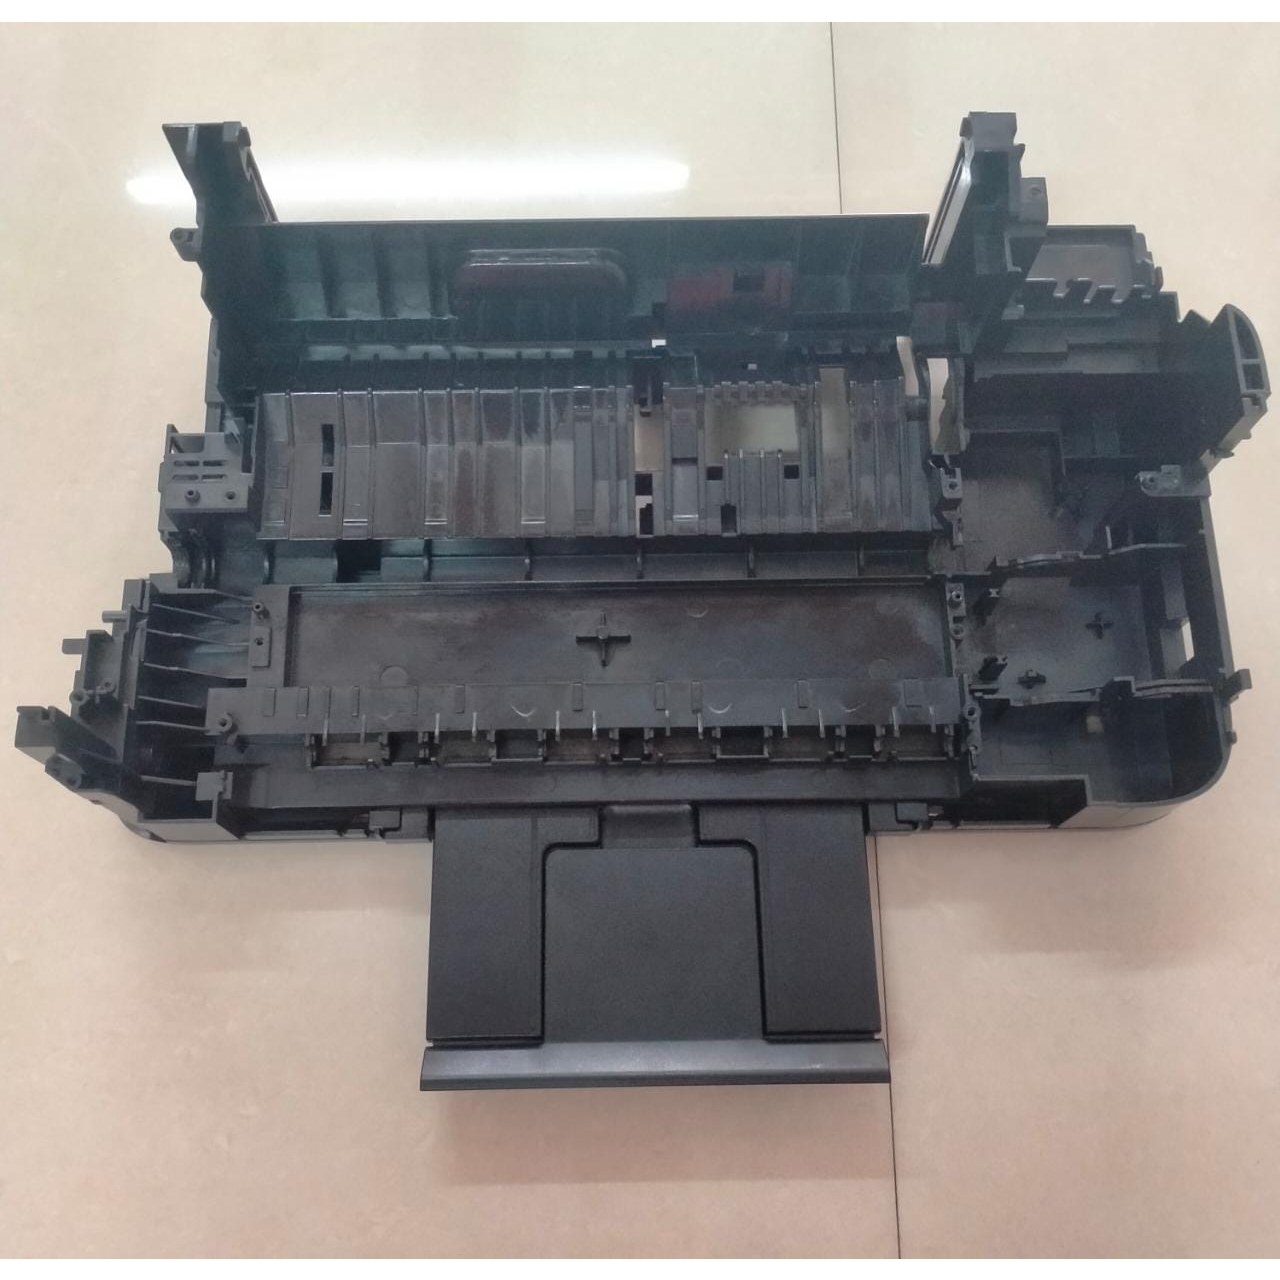 casing bawah printer epson L310 (COPOTAN PRINTER)